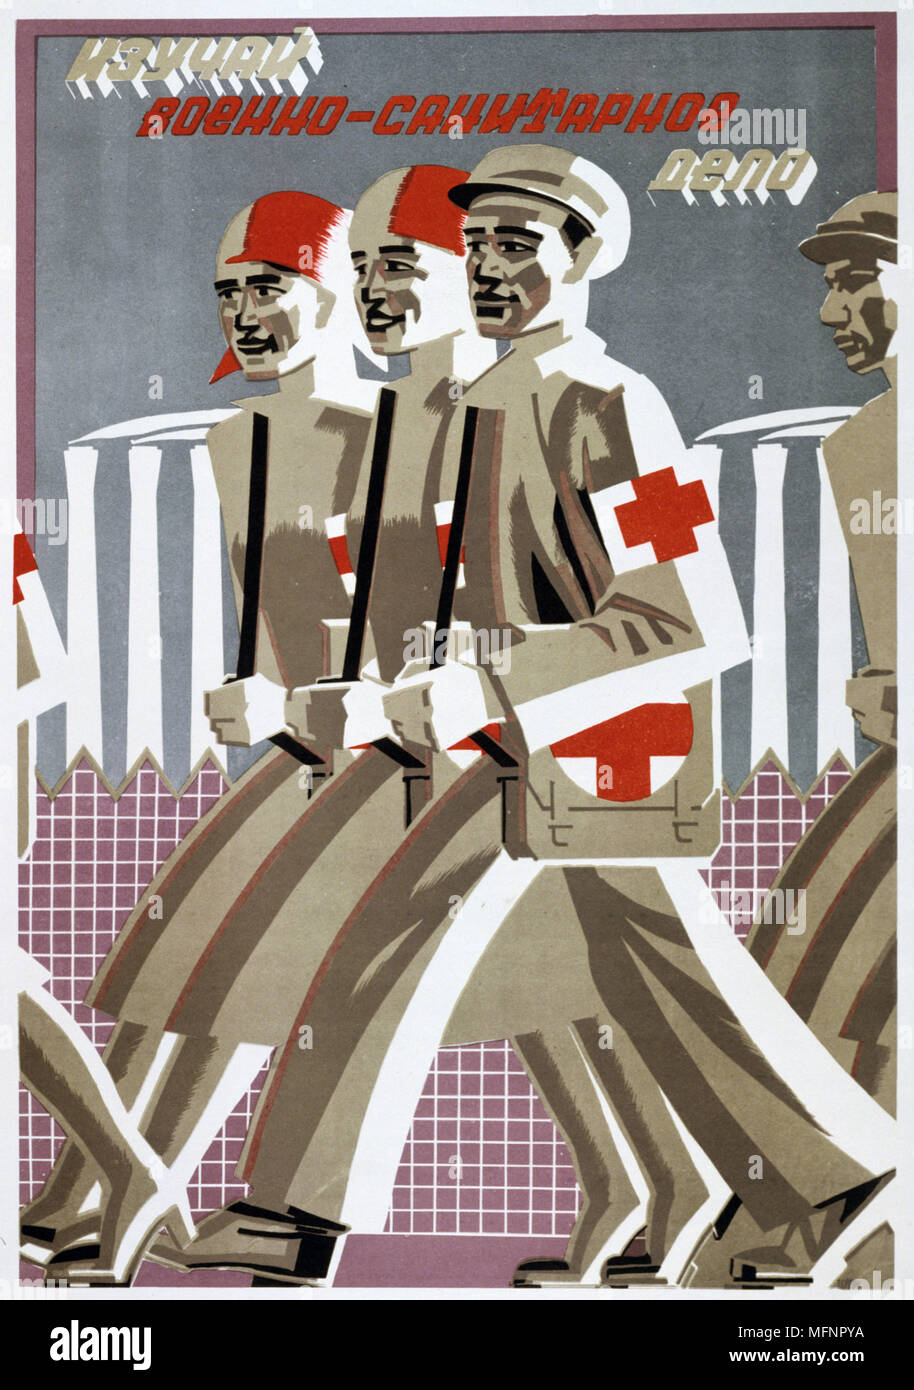 La formation militaire est importante", 1929. Affiche de propagande soviétique par Feodorvich Shtranikh Vladimir. La Russie communiste le communisme de l'URSS Banque D'Images